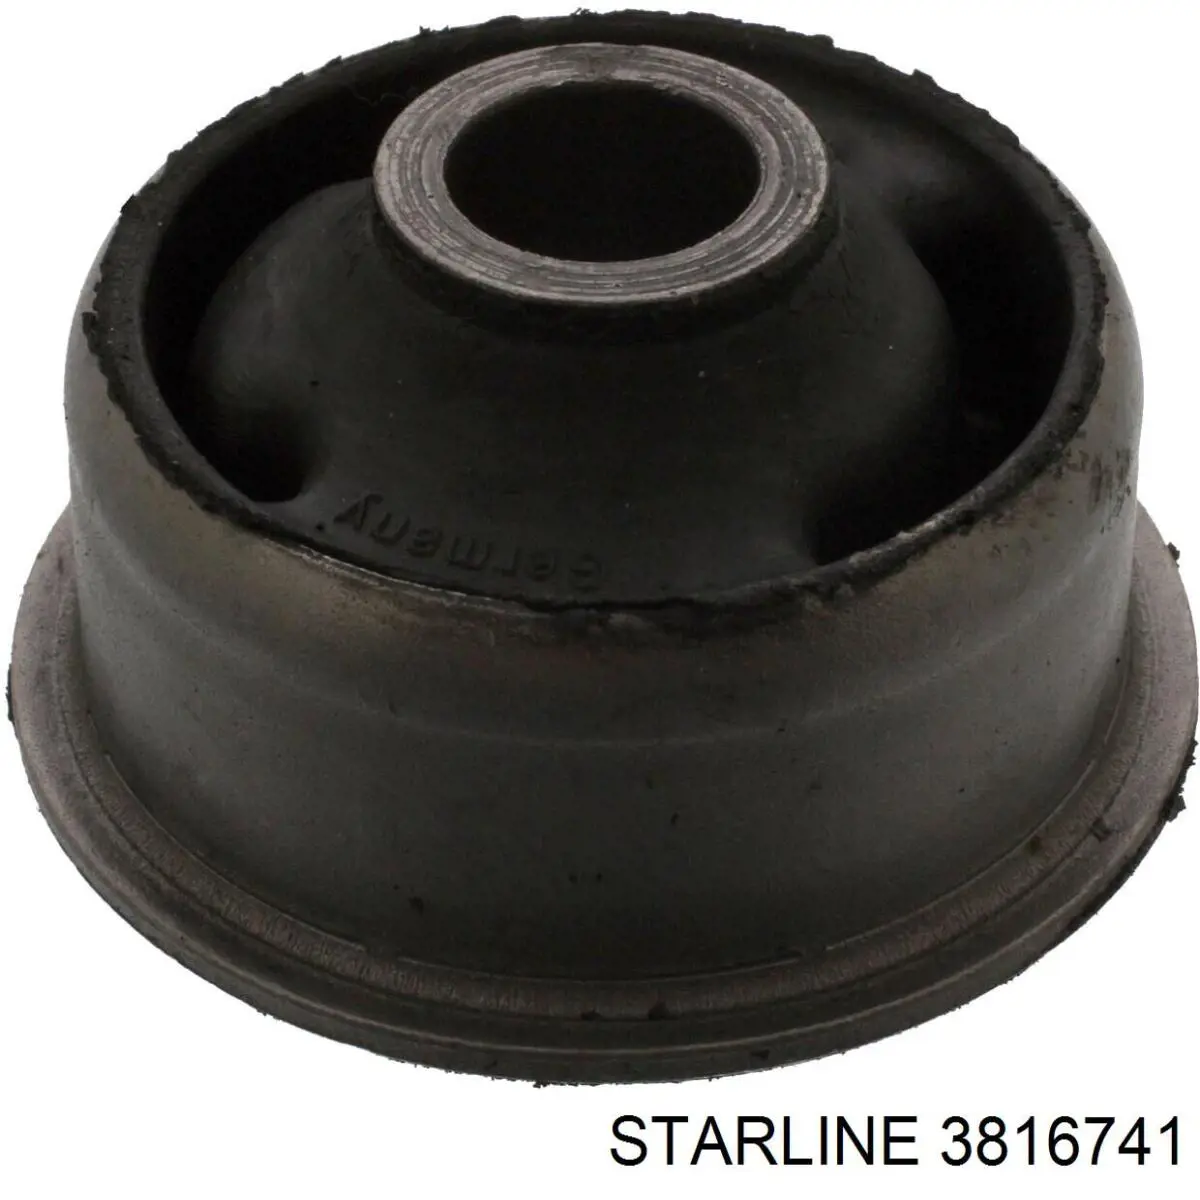 3816741 Starline silentblock de suspensión delantero inferior